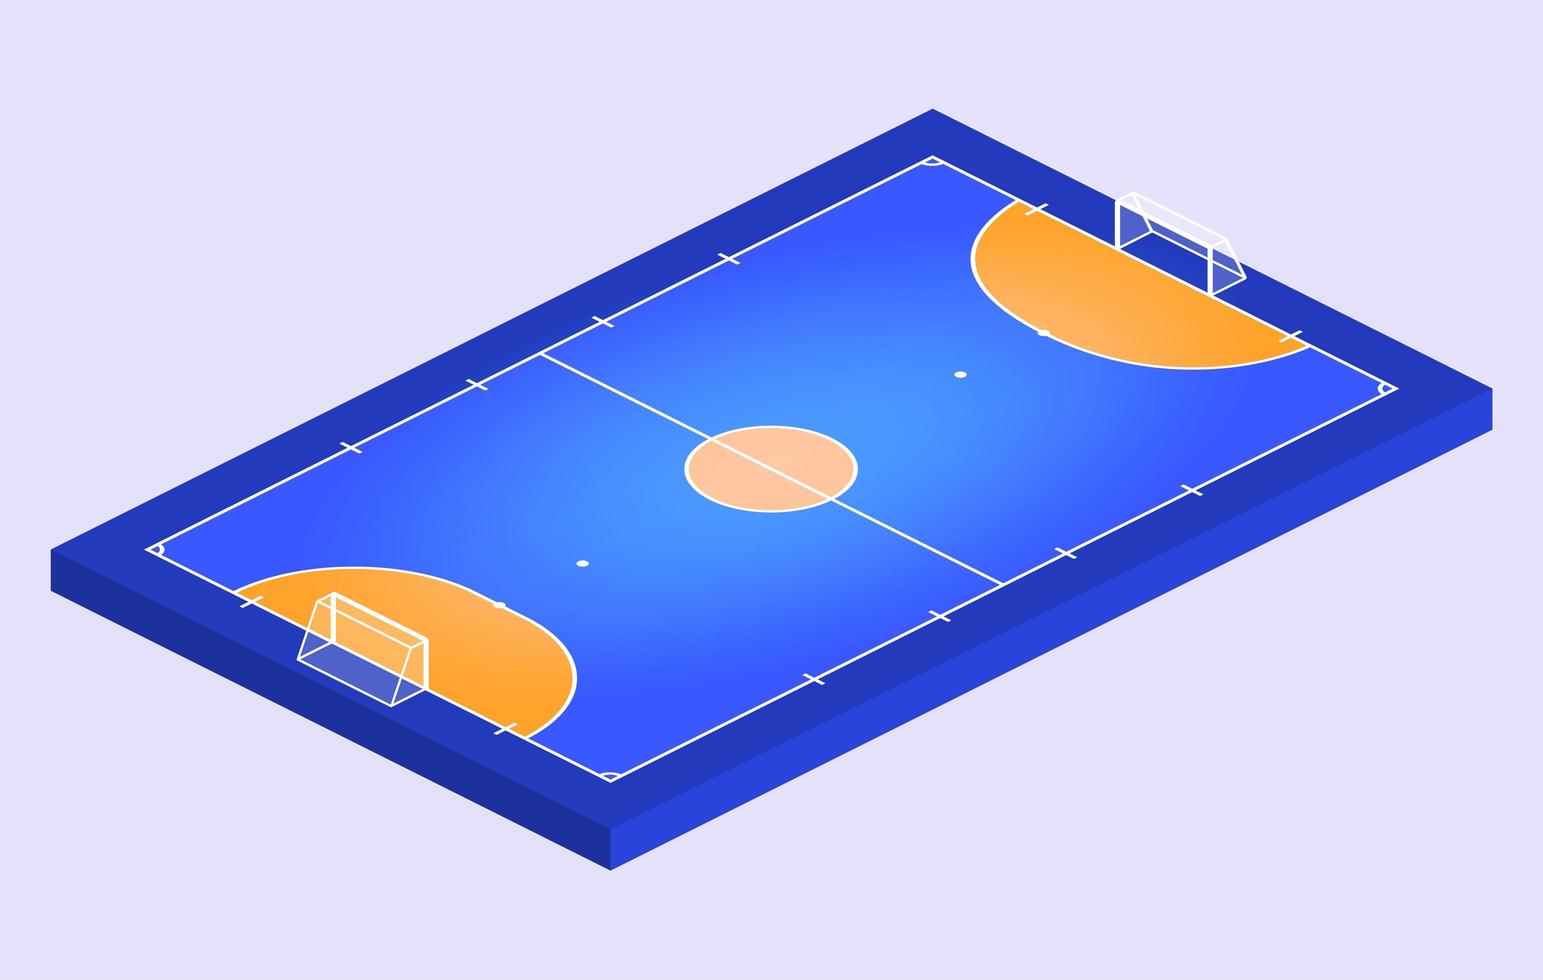 campo de vista en perspectiva isométrica para fútbol sala. contorno naranja de líneas ilustración de vector de campo de fútbol sala.